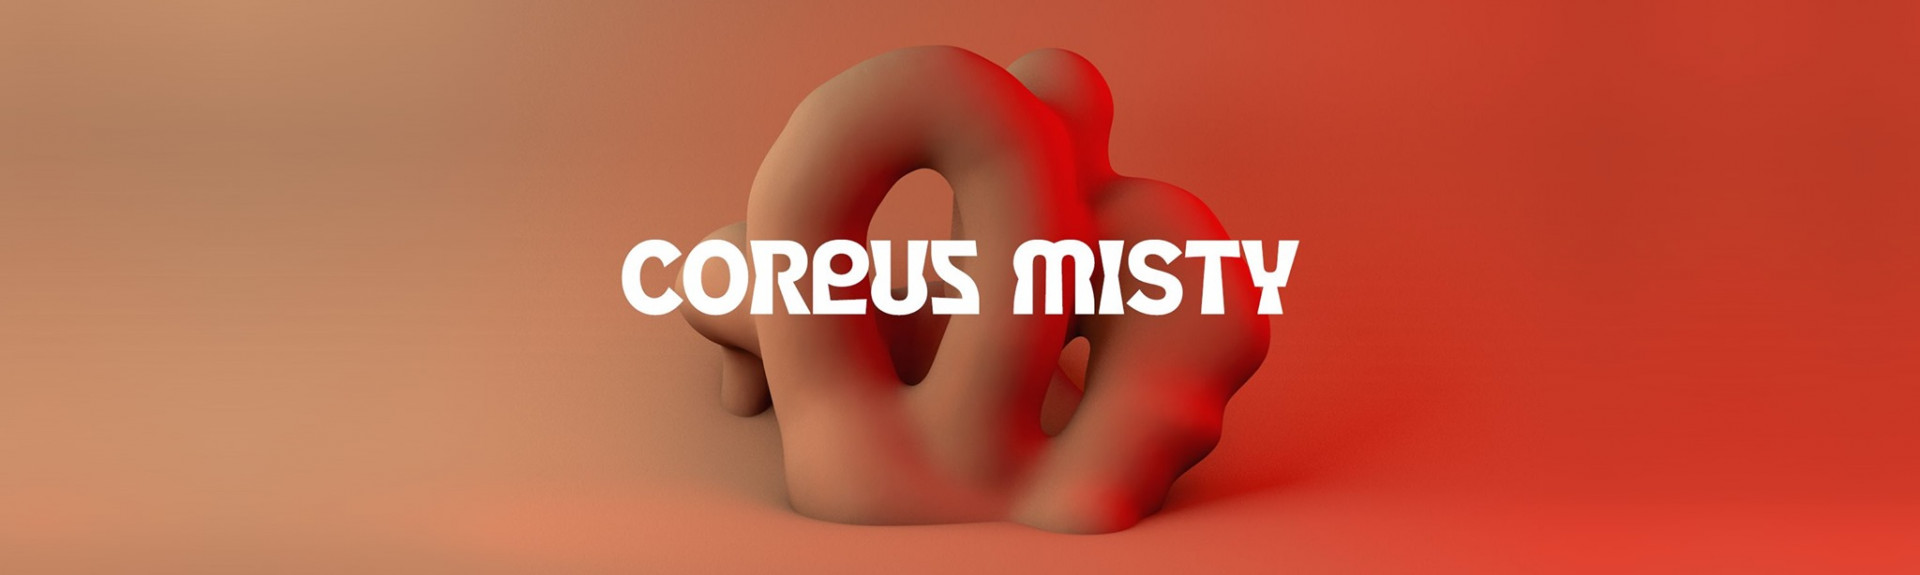 Corpus Misty